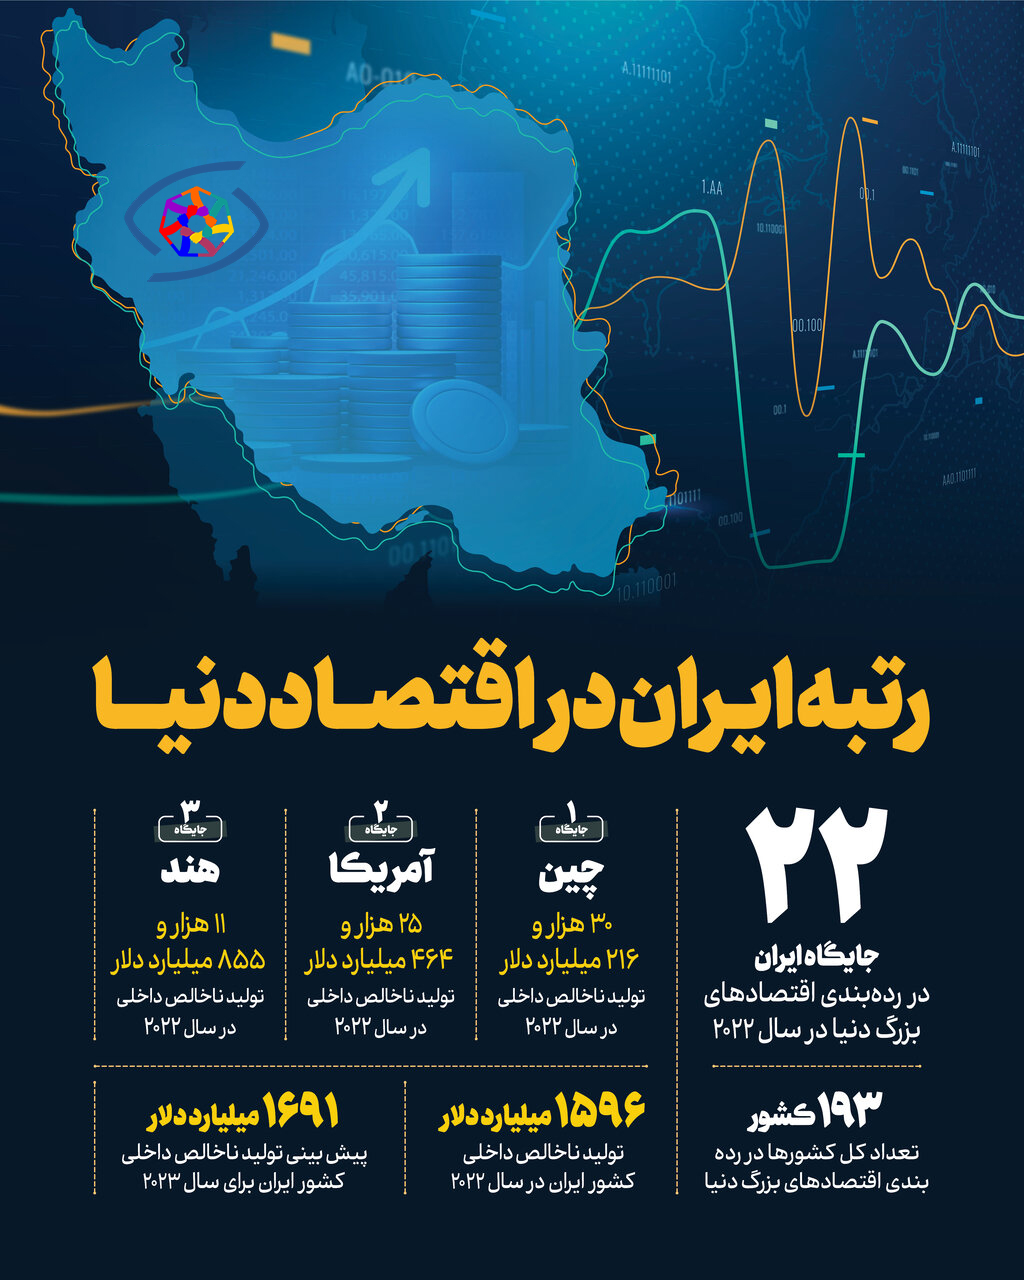 اینفوگرافیک؛ رتبه ایران در اقتصاد دنیا ۲۰۲۲ + جزئیات